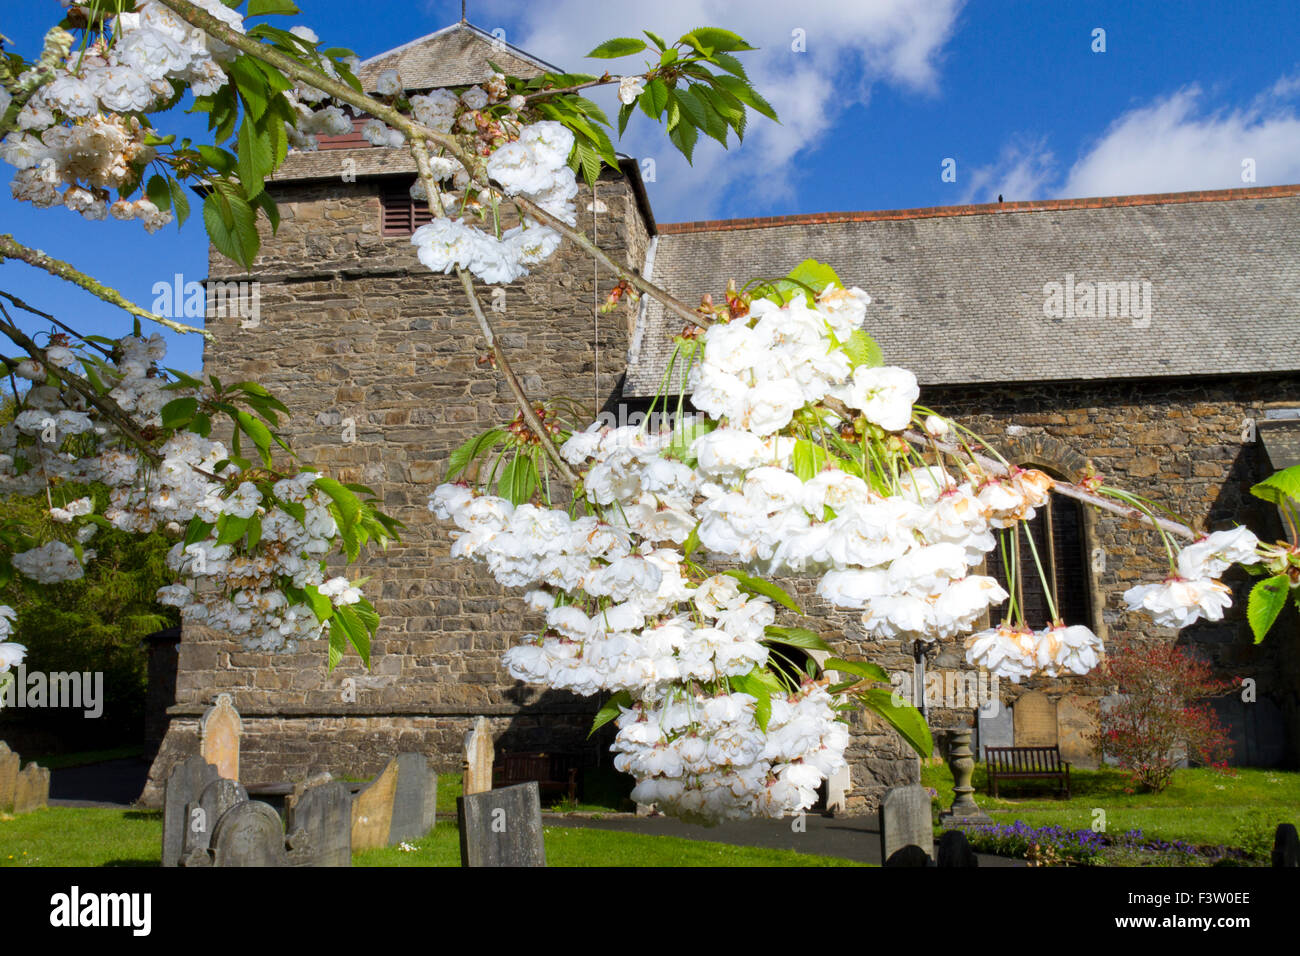 Fioritura giapponese ciliegio (Prunus sp.) doppio modulo fiorito fioritura in un cimitero. Llanidloes, POWYS, GALLES. Maggio. Foto Stock